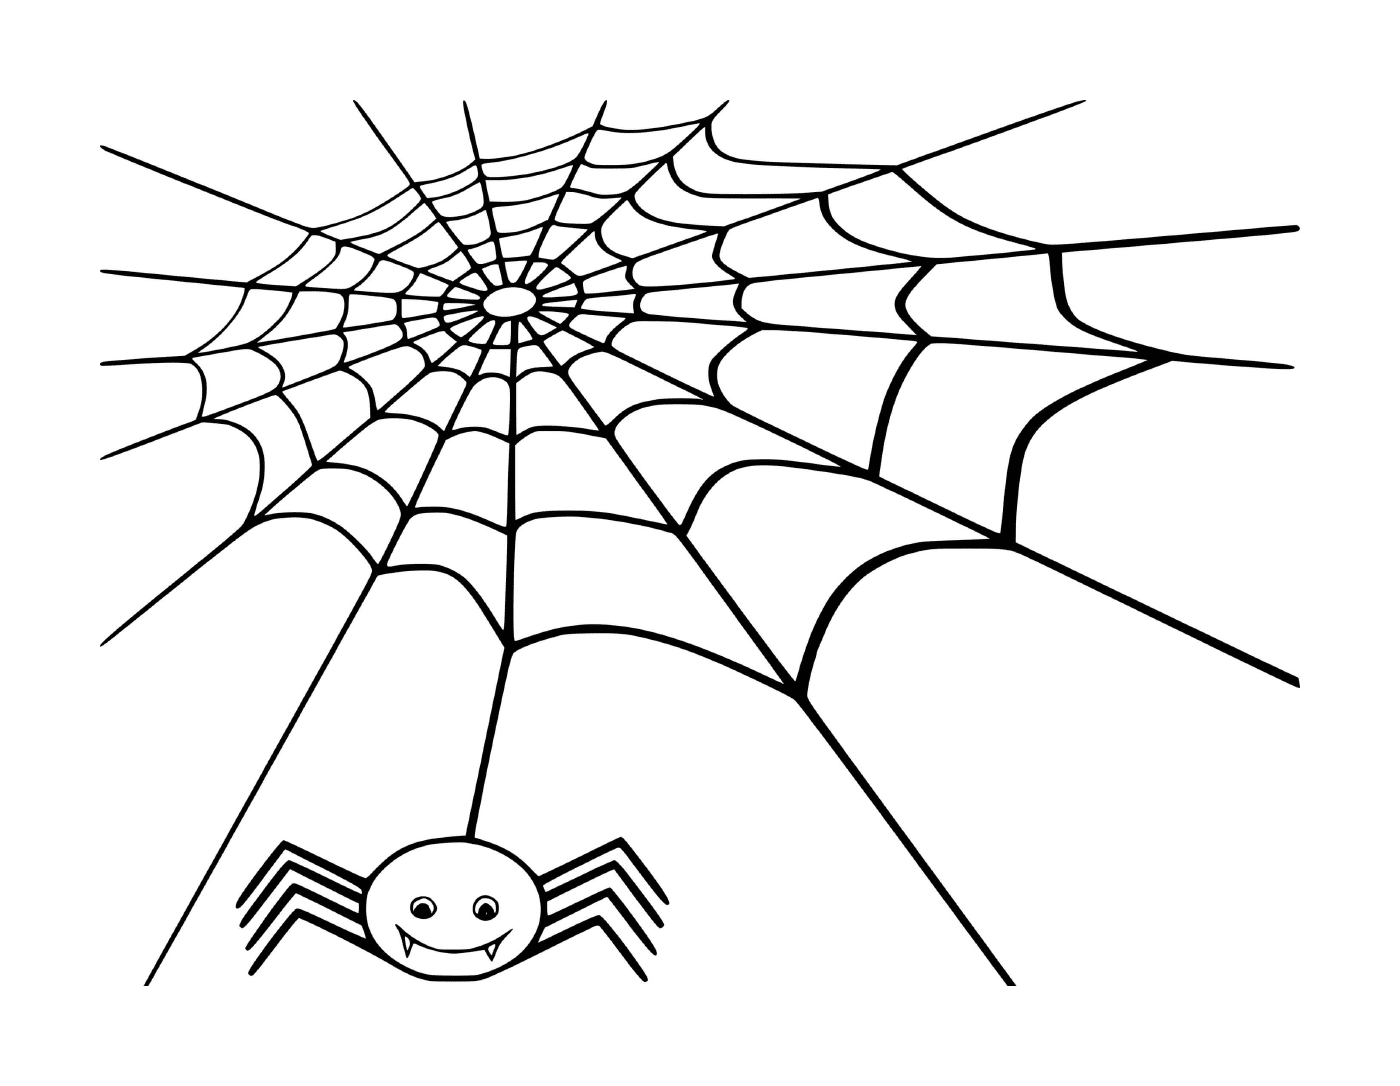   Une toile d'araignée où une araignée attend sa proie 